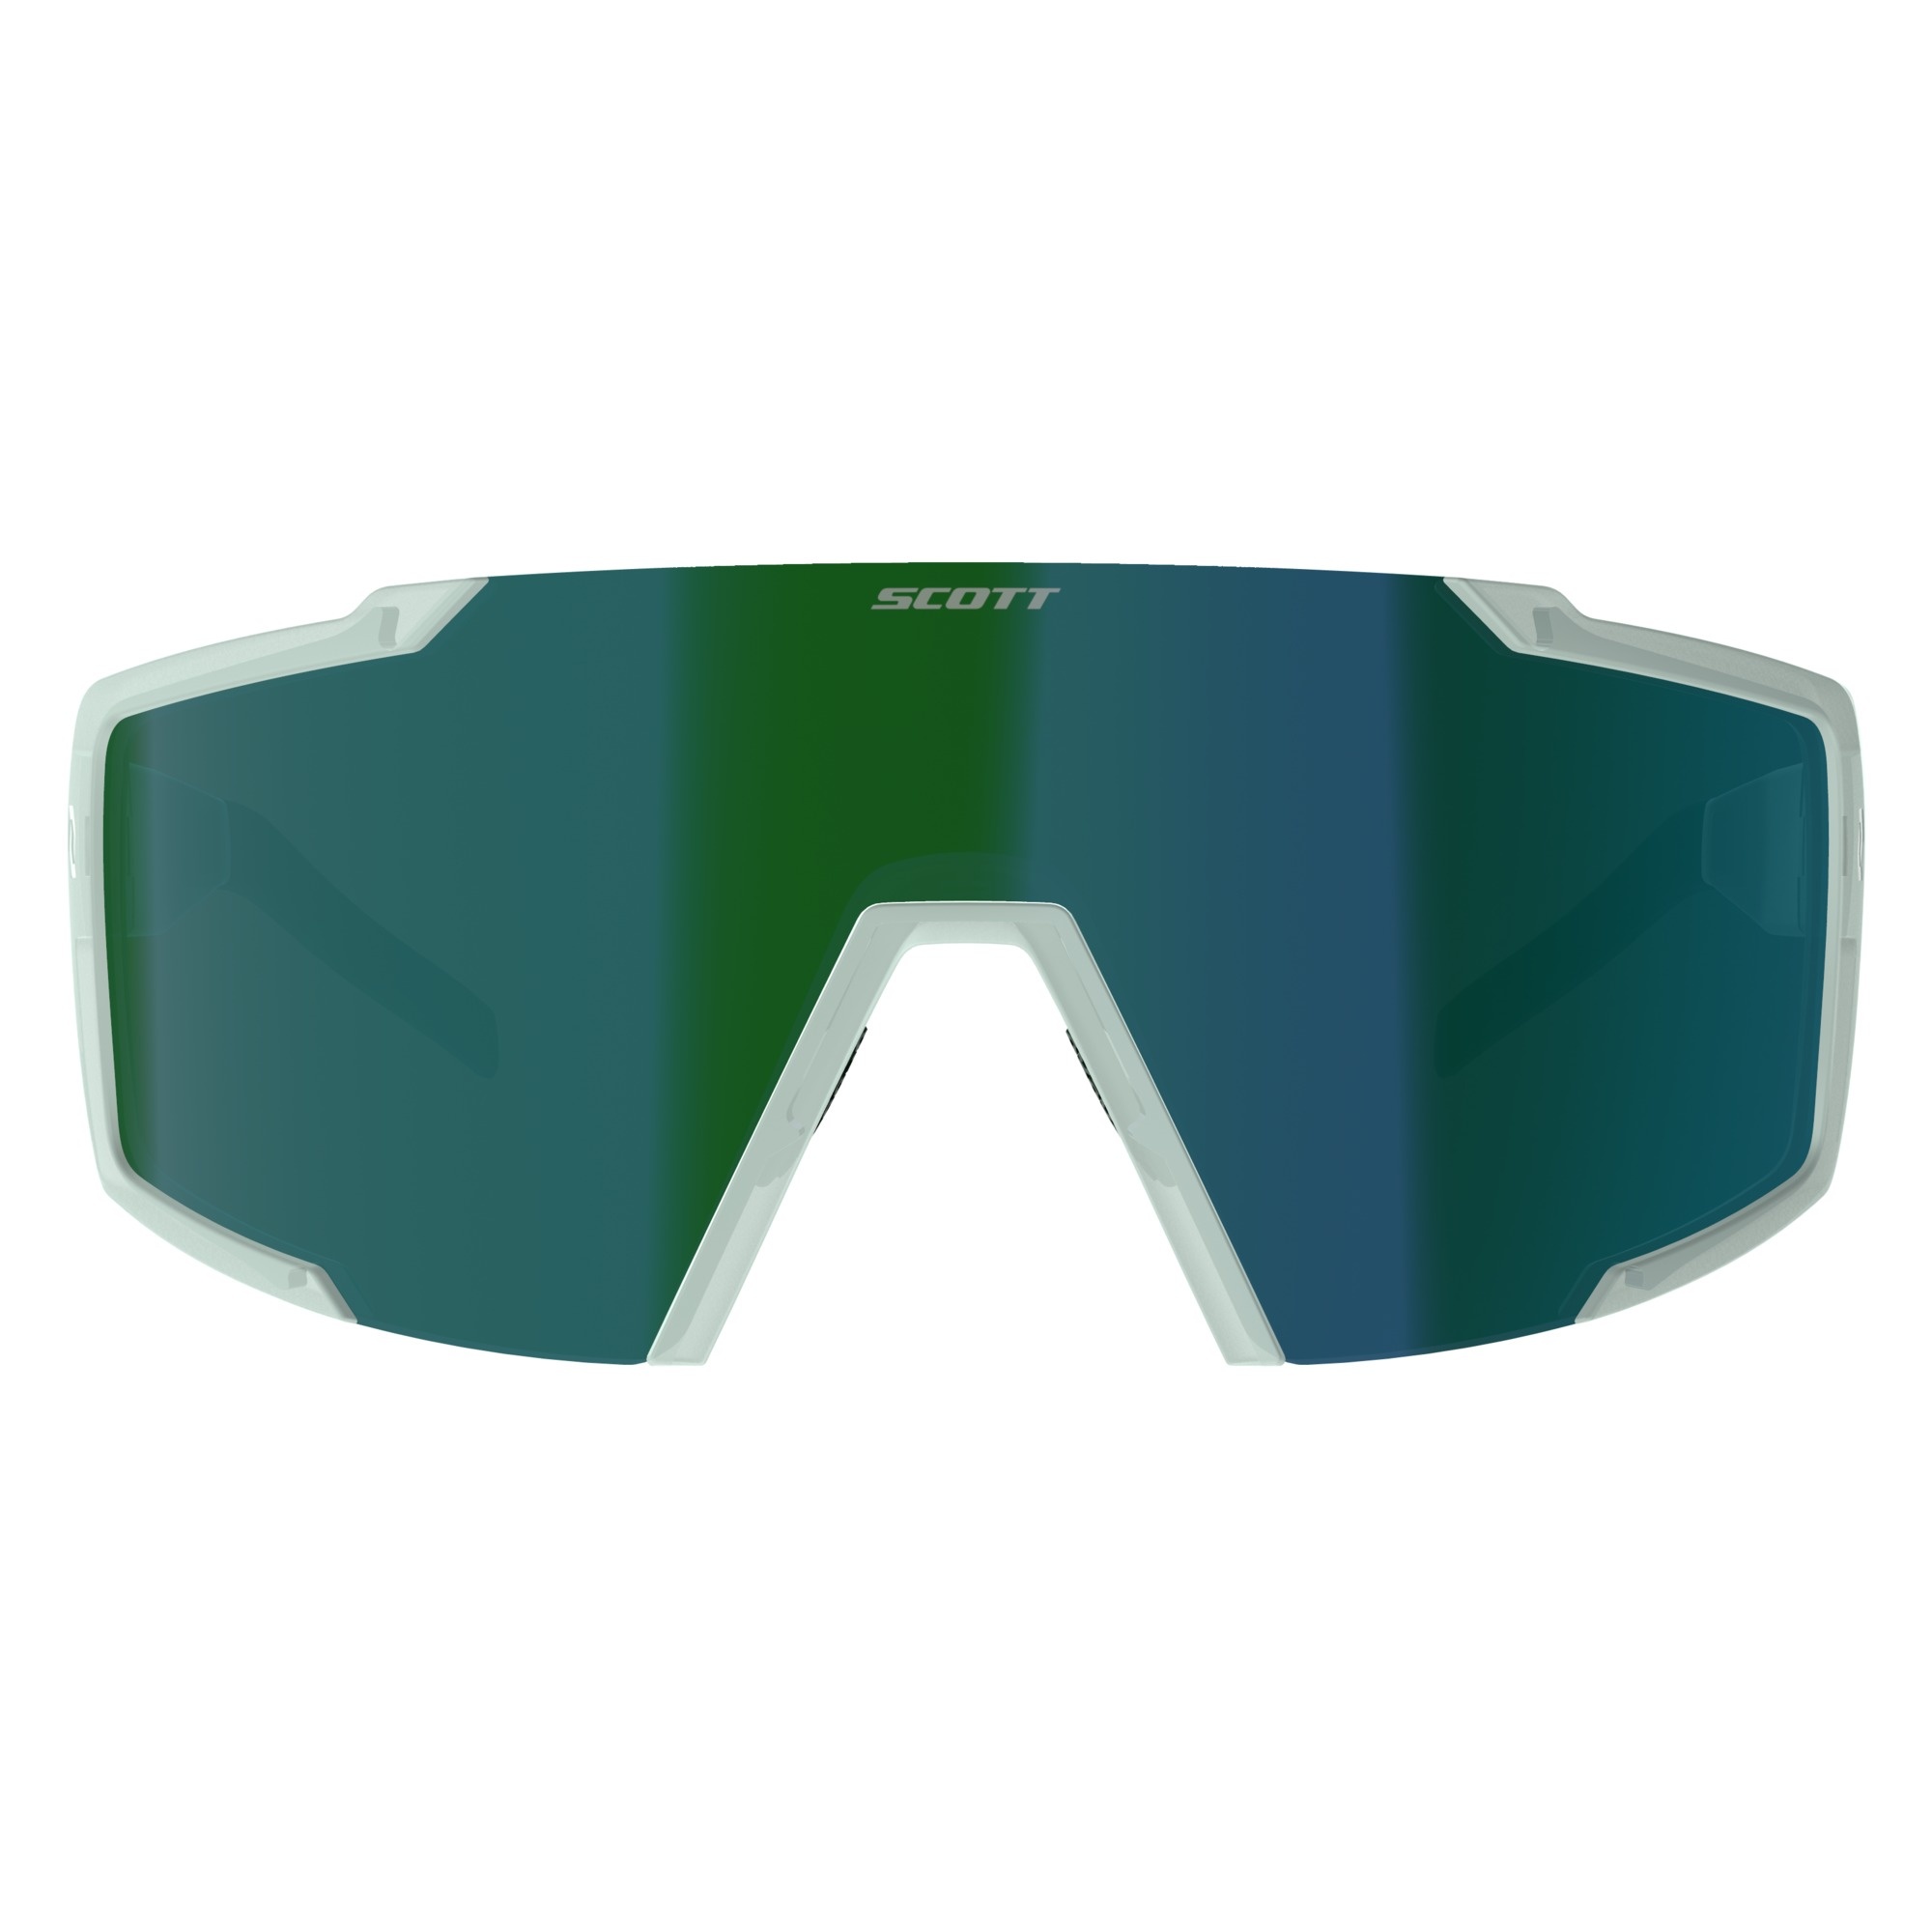 Beklædning - Cykelbriller - Scott Shield Cykelbrille - Grøn/Hvid/Blå